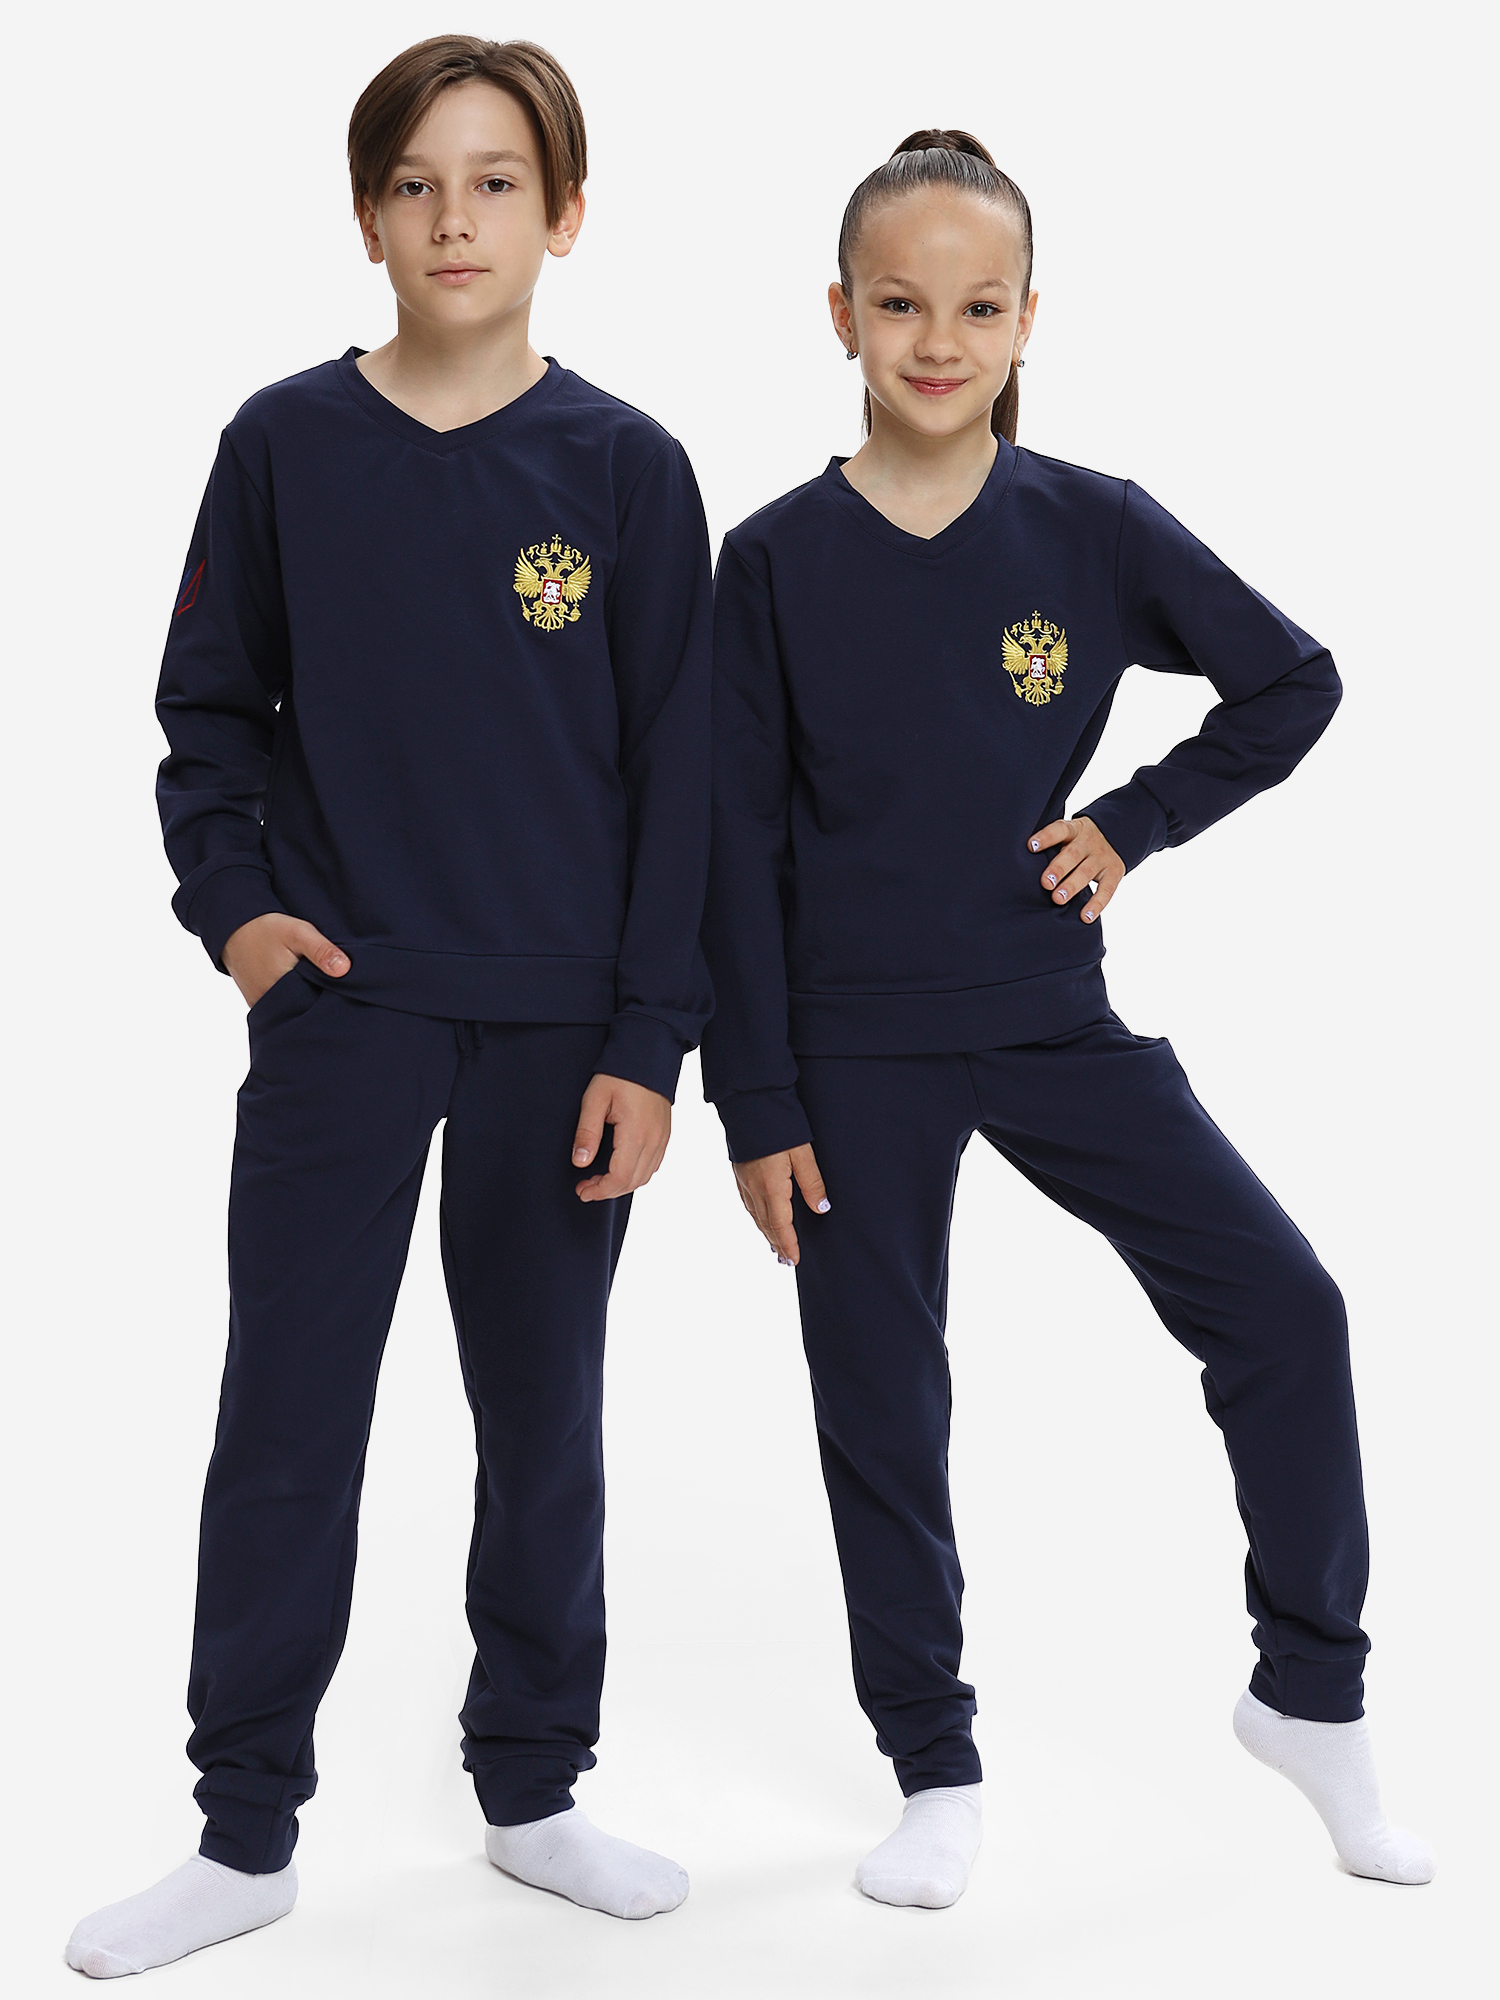 Спортивный костюм детский: для мальчика и девочки WILDWINS, Синий